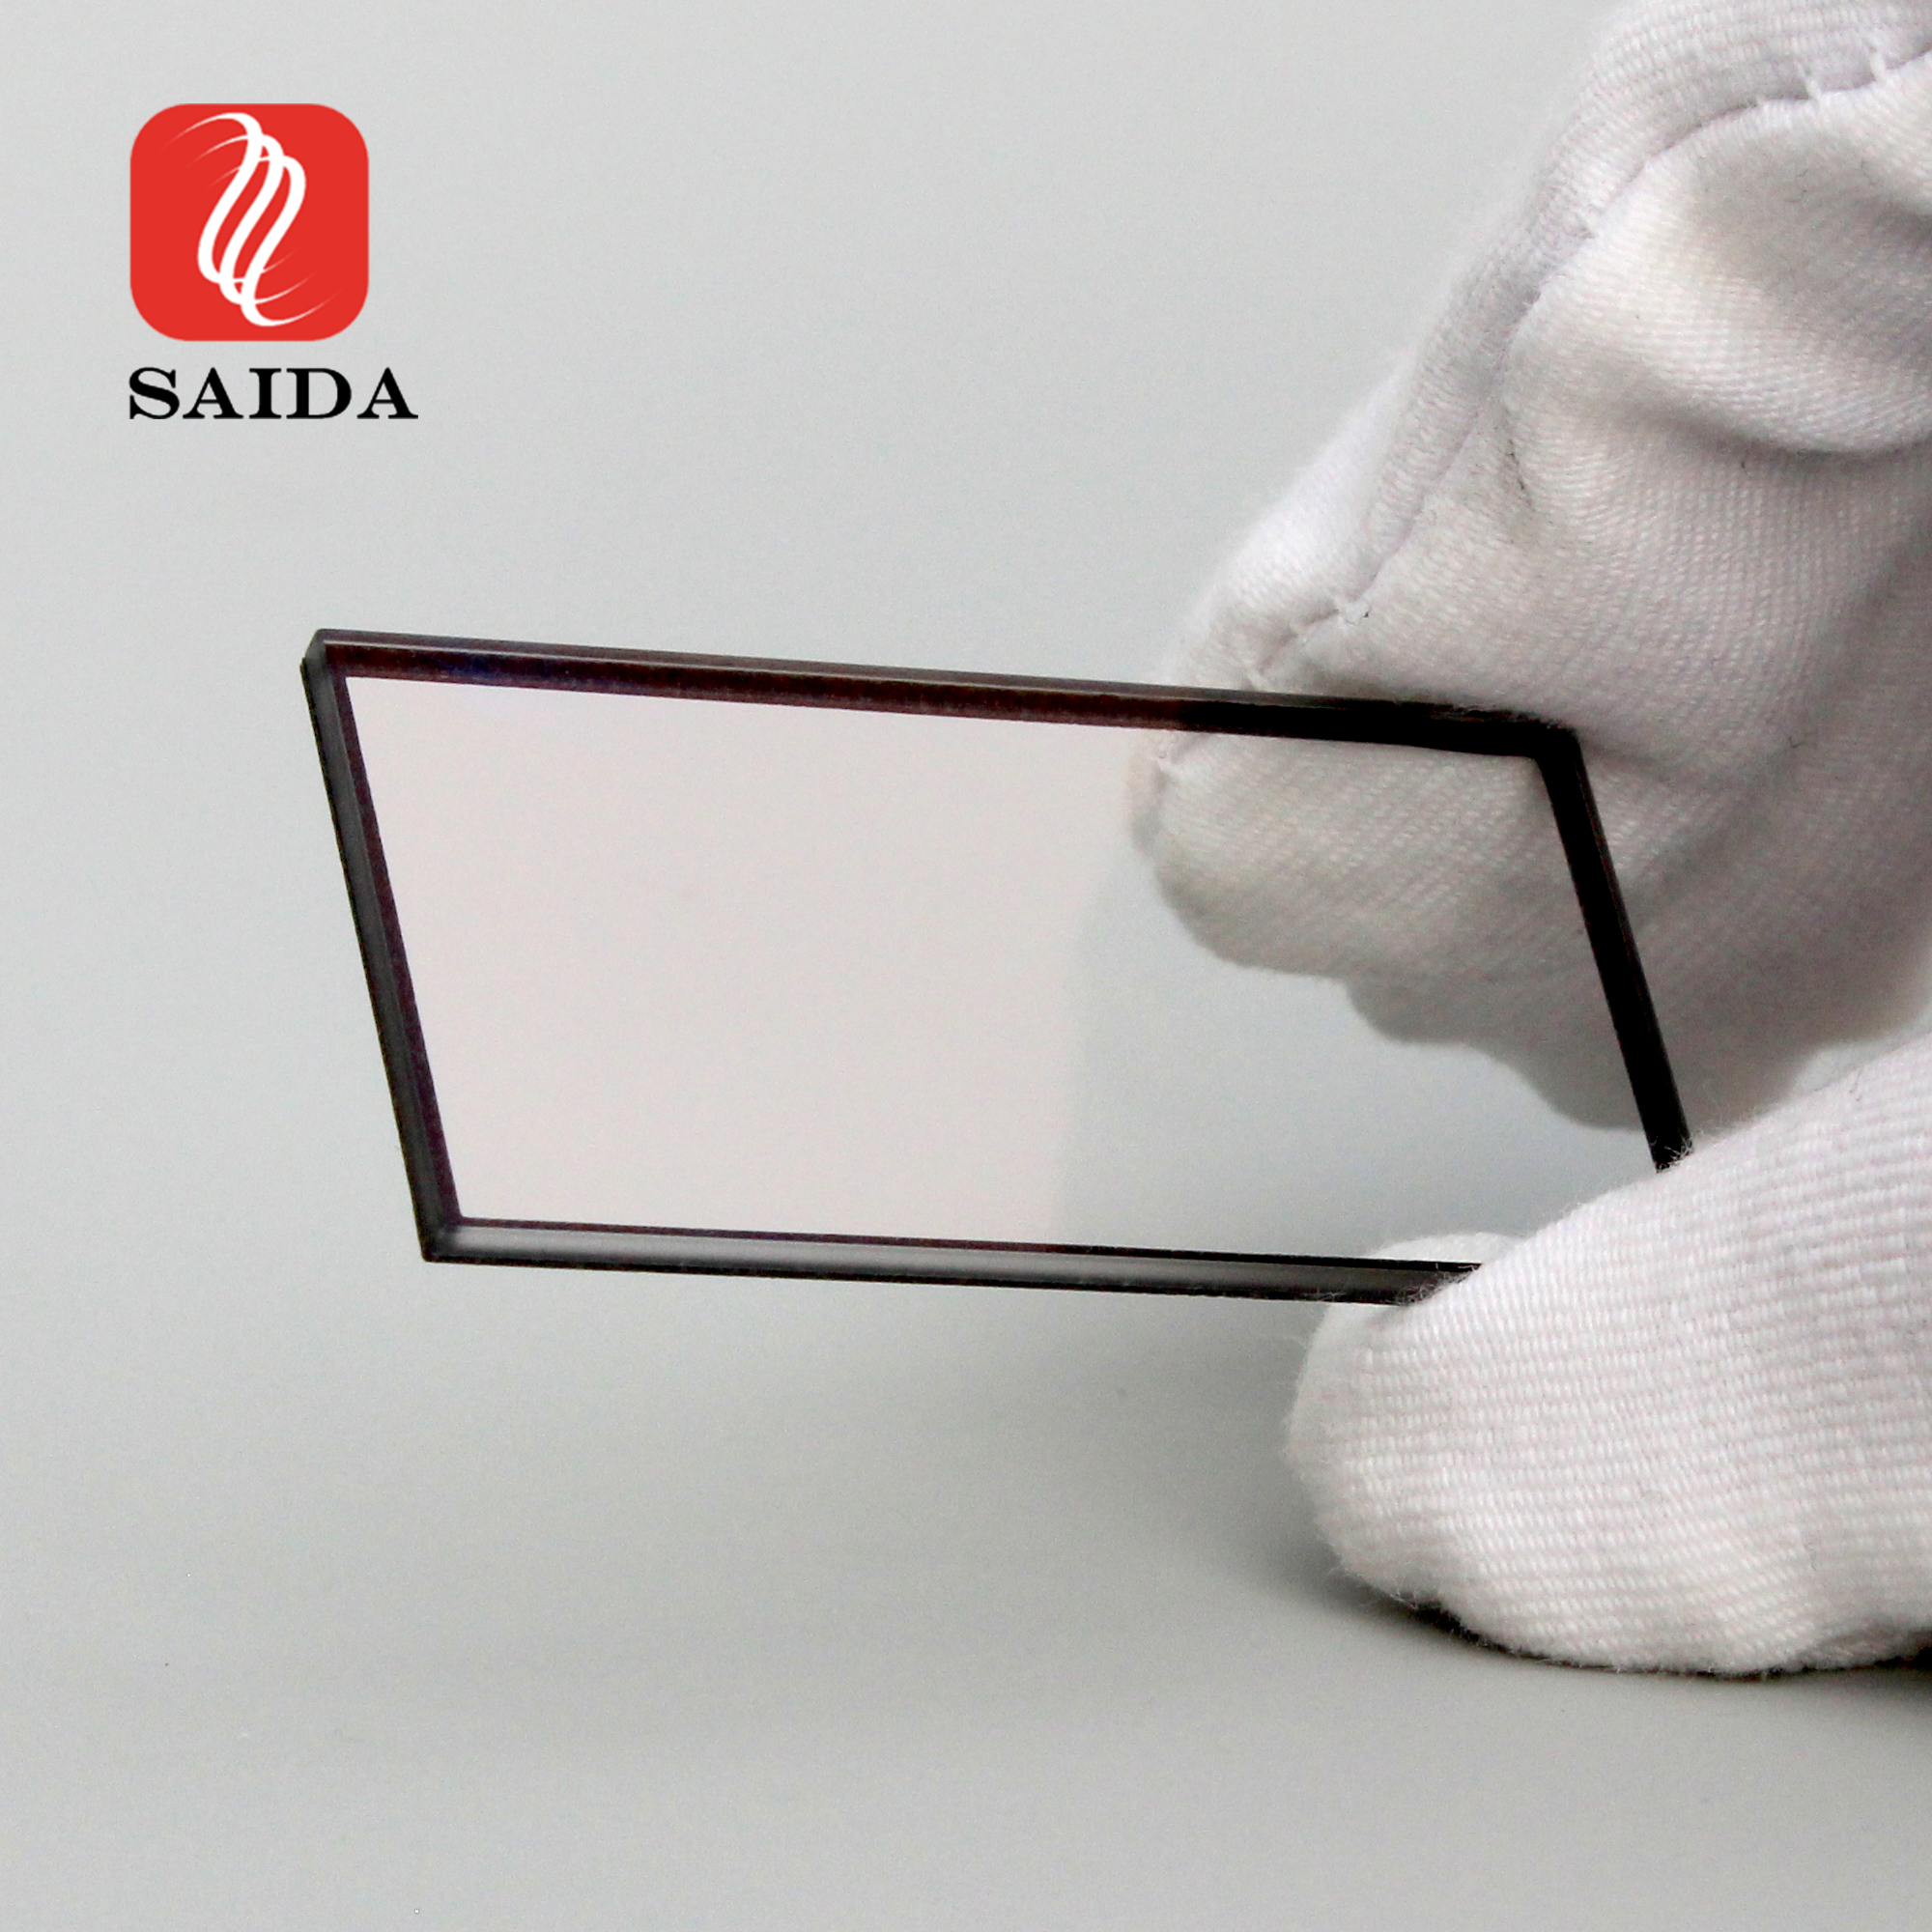 デジタイザーモニター用98%透過率反射防止カバーガラス